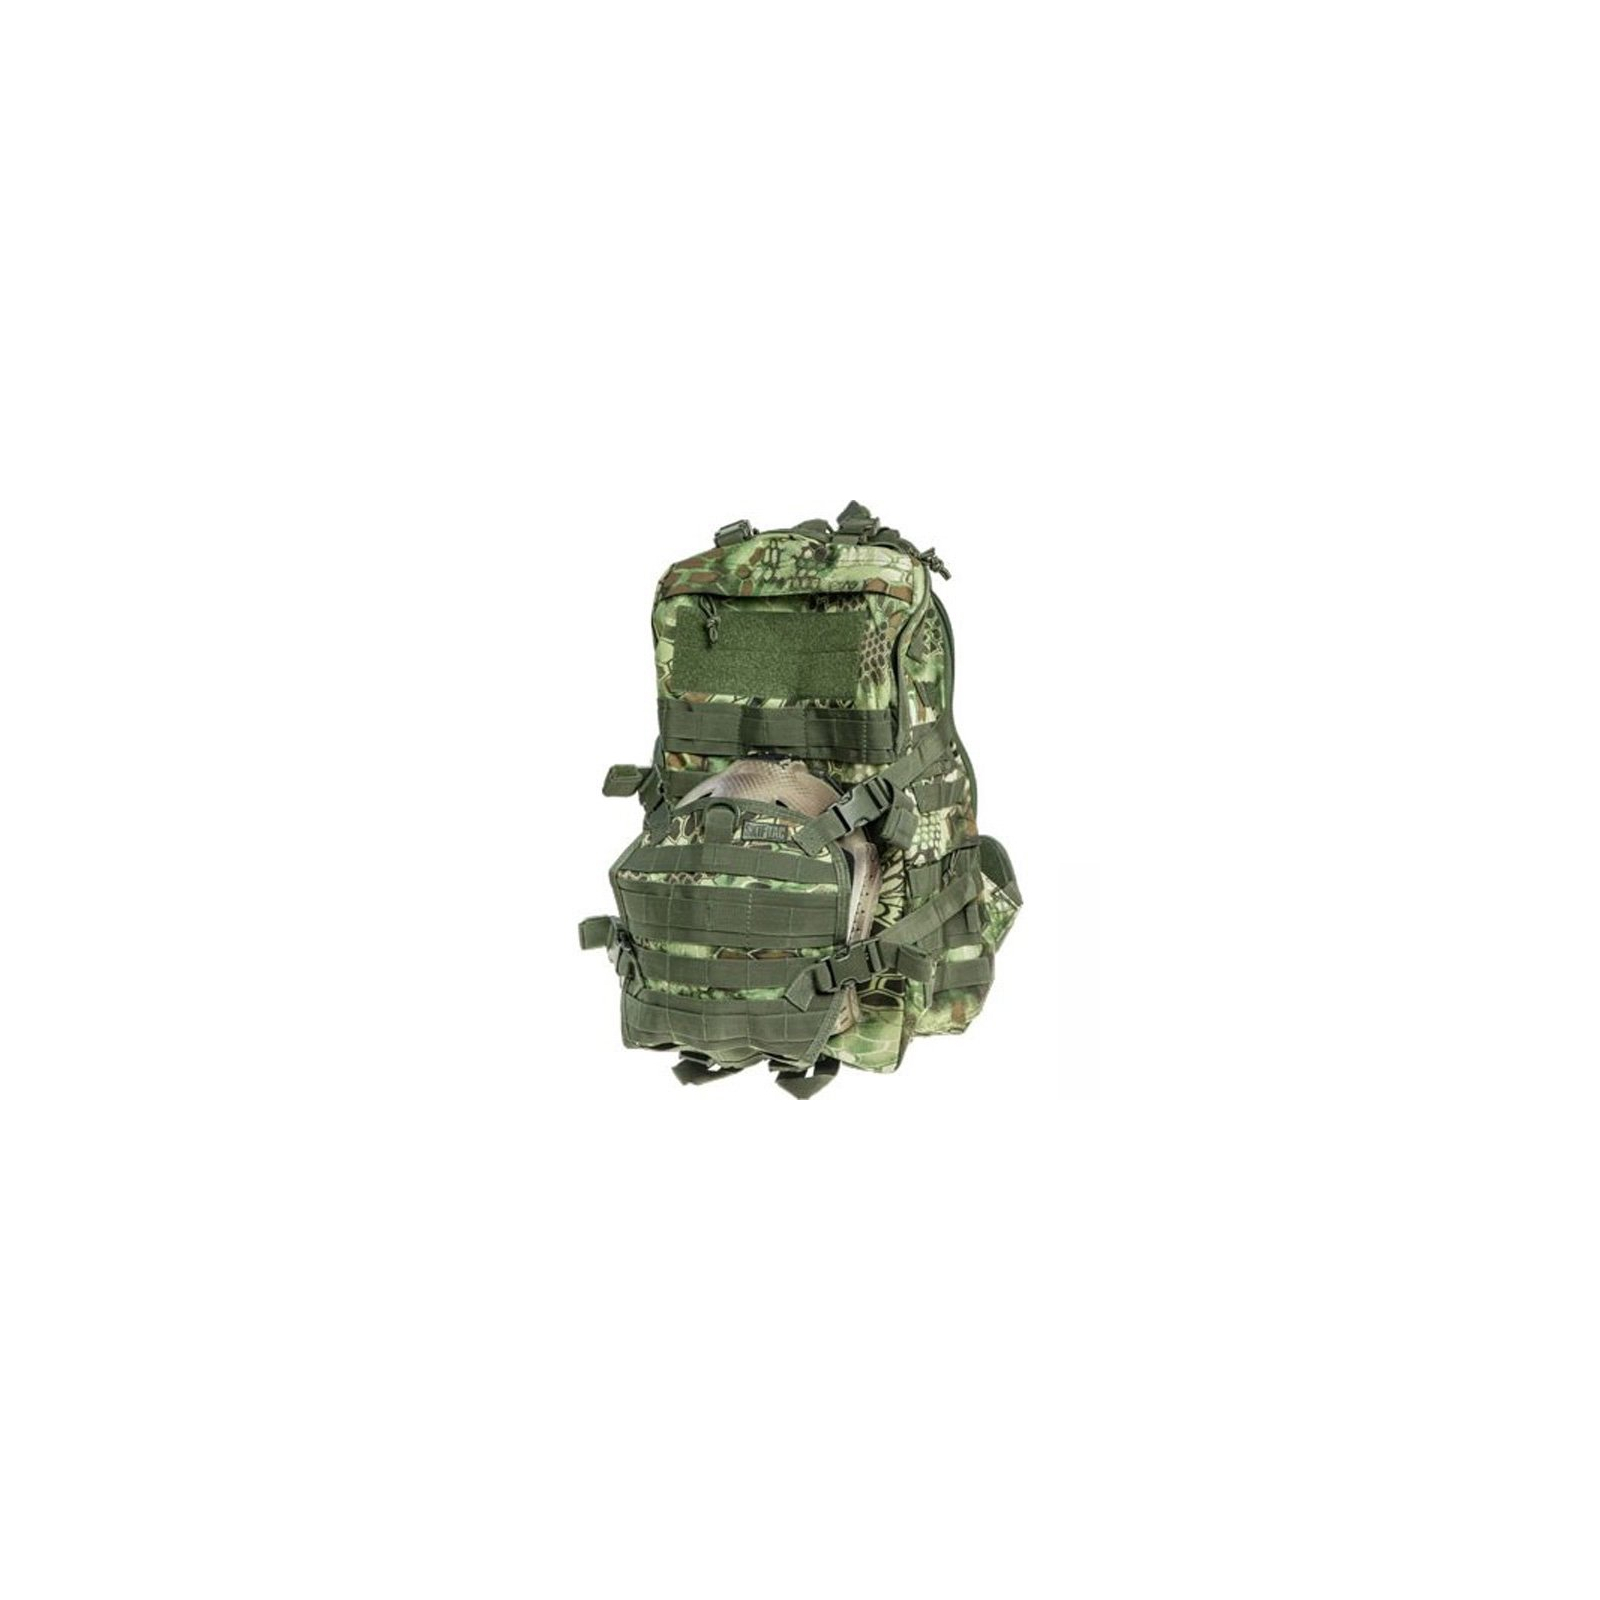 Рюкзак туристичний Skif Tac тактический патрульный 35 литров kryptek green (GB0110-KGR)